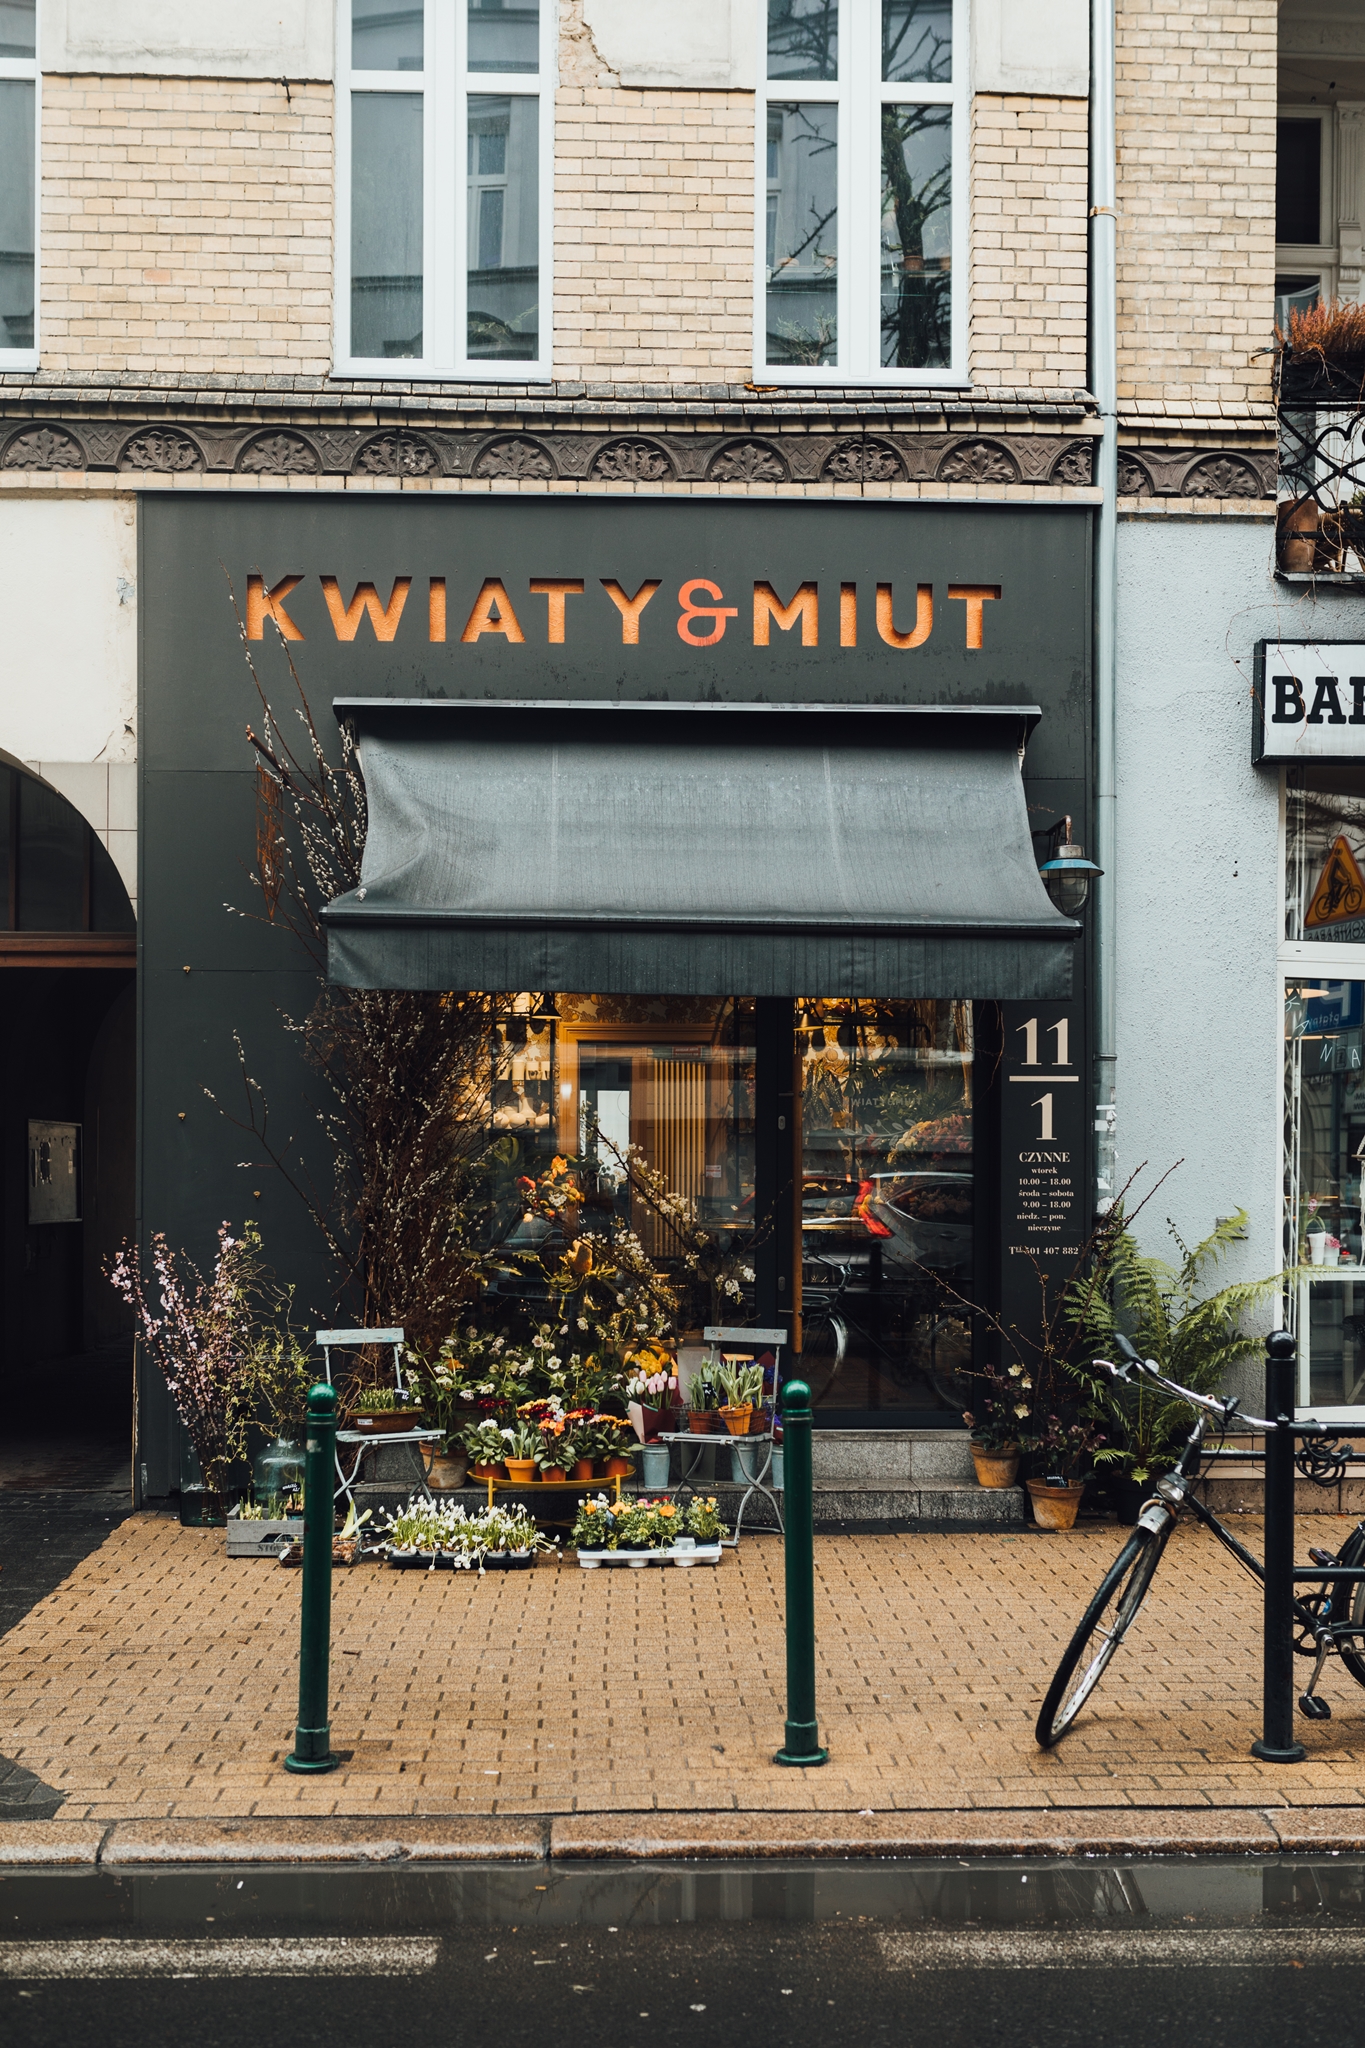 Cửa hàng hoa Kwiaty & Miut của họ khá nổi tiếng tại thành phố Poznań của đất nước Ba Lan xinh đẹp.